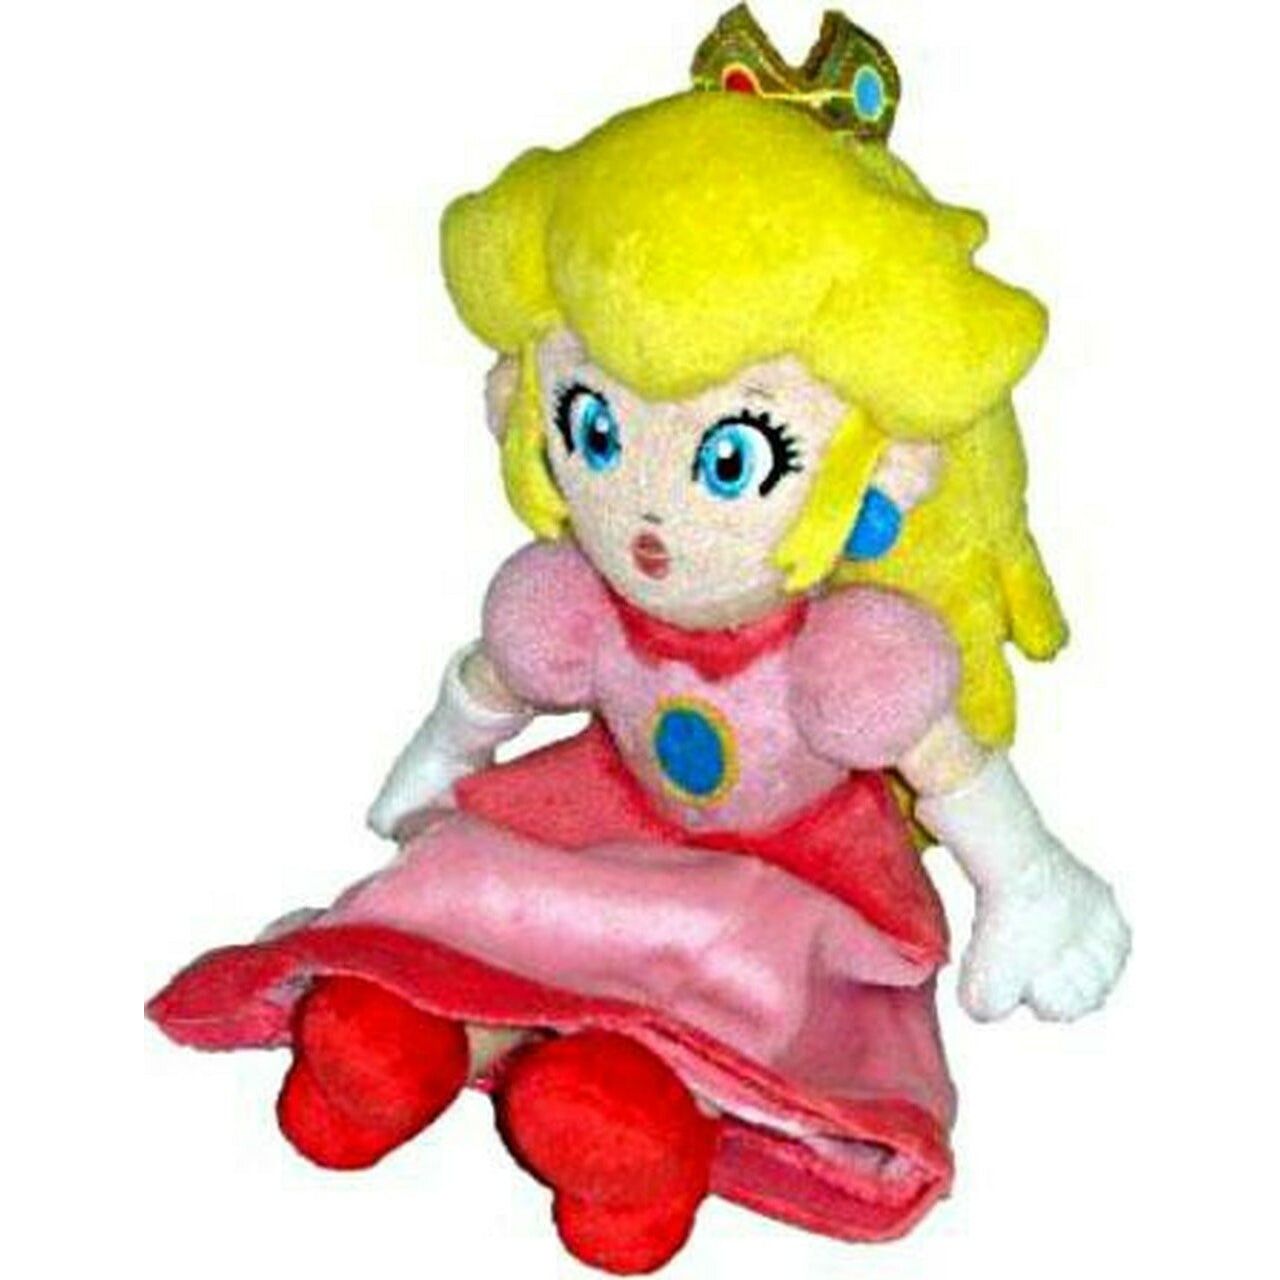 Plush - Mario Brothers Princess Peach 8 Inch